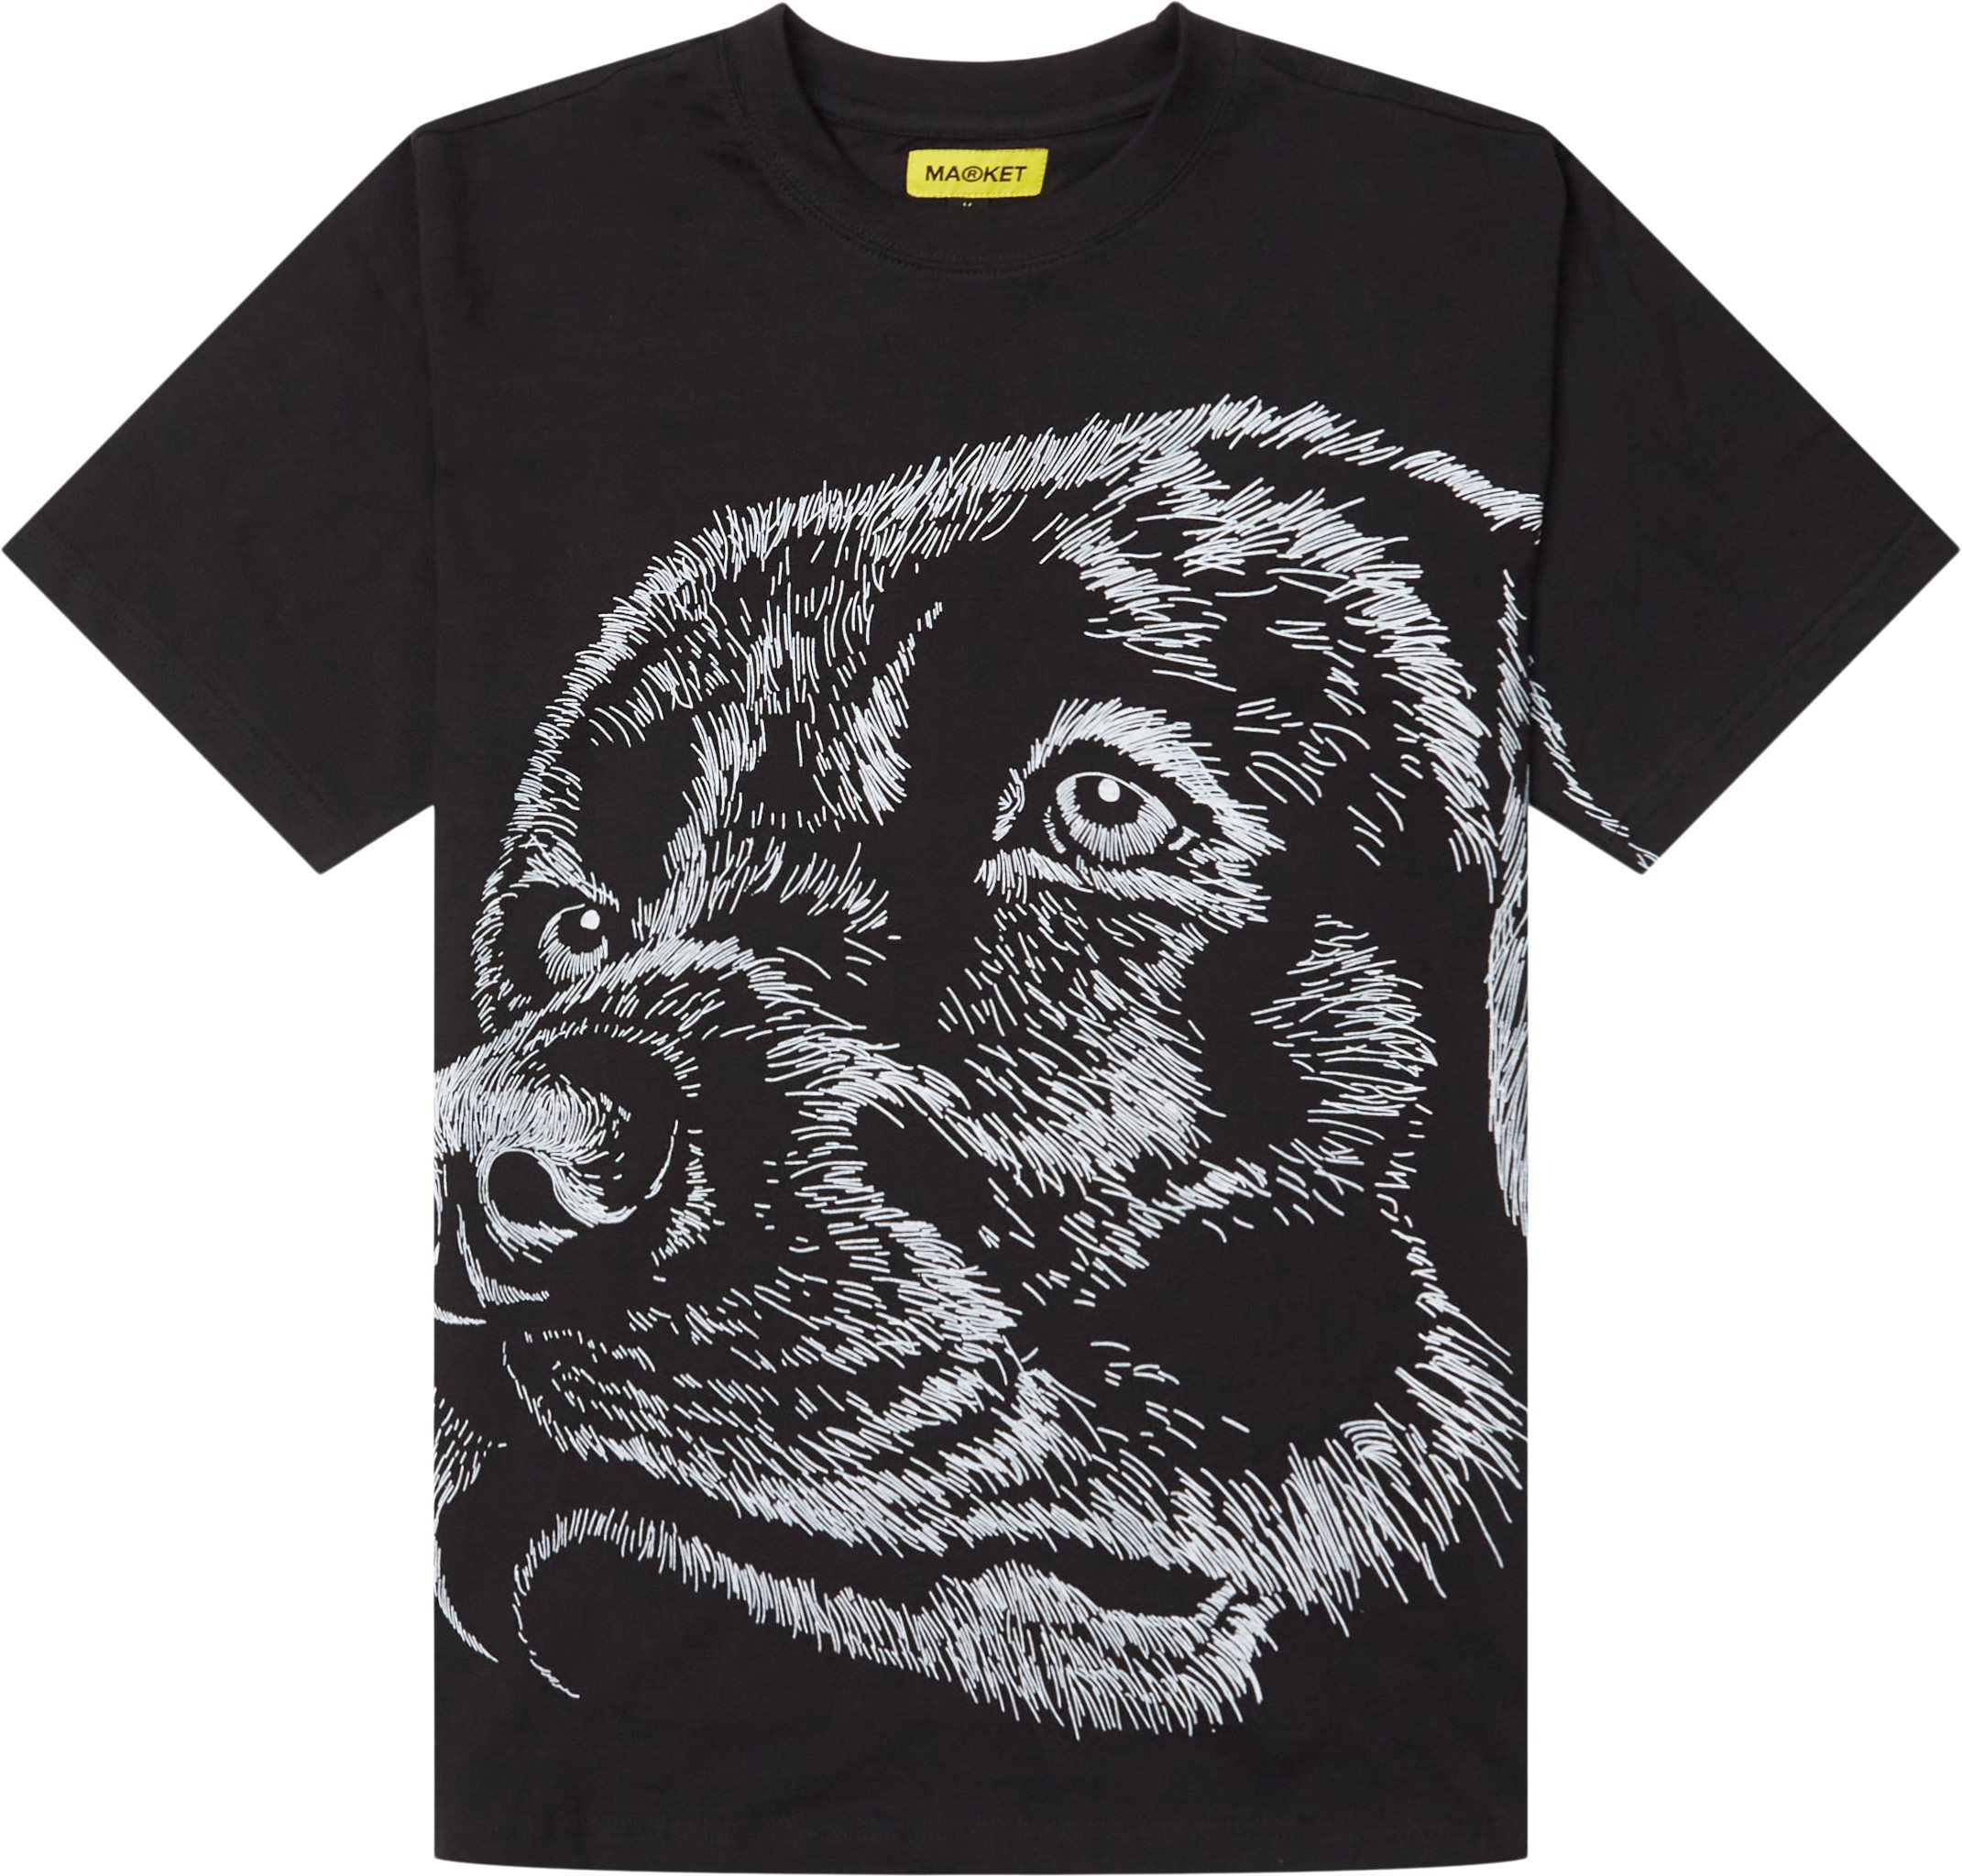 Guard Dog Maximum Security Tee - T-shirts - Regular fit - Svart